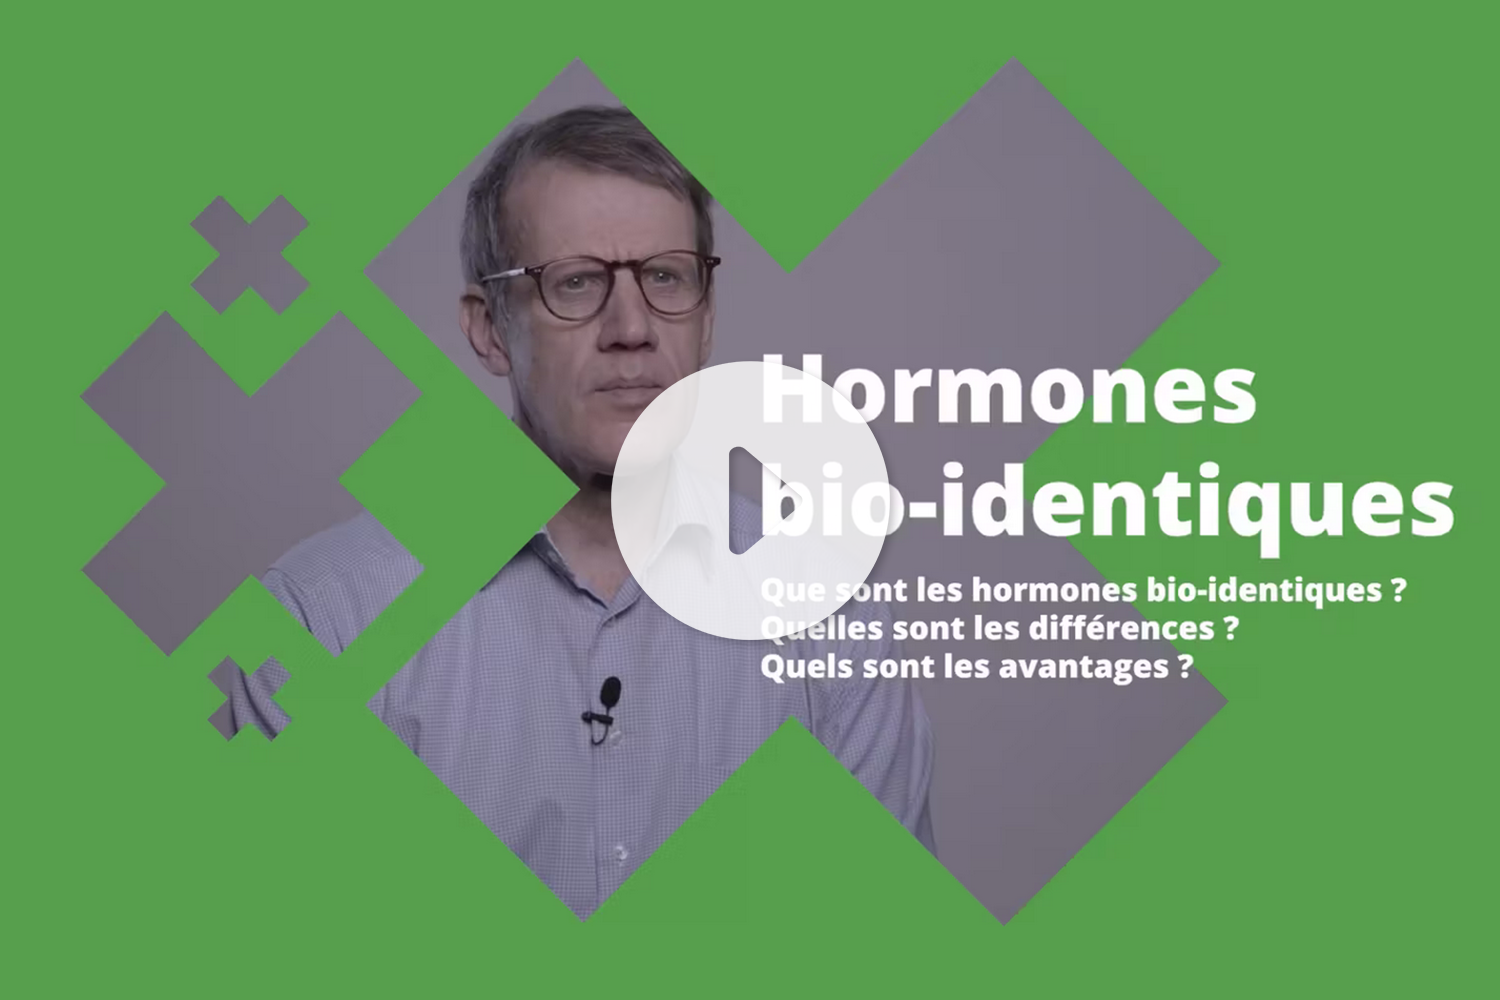 Hormones bio-identiques